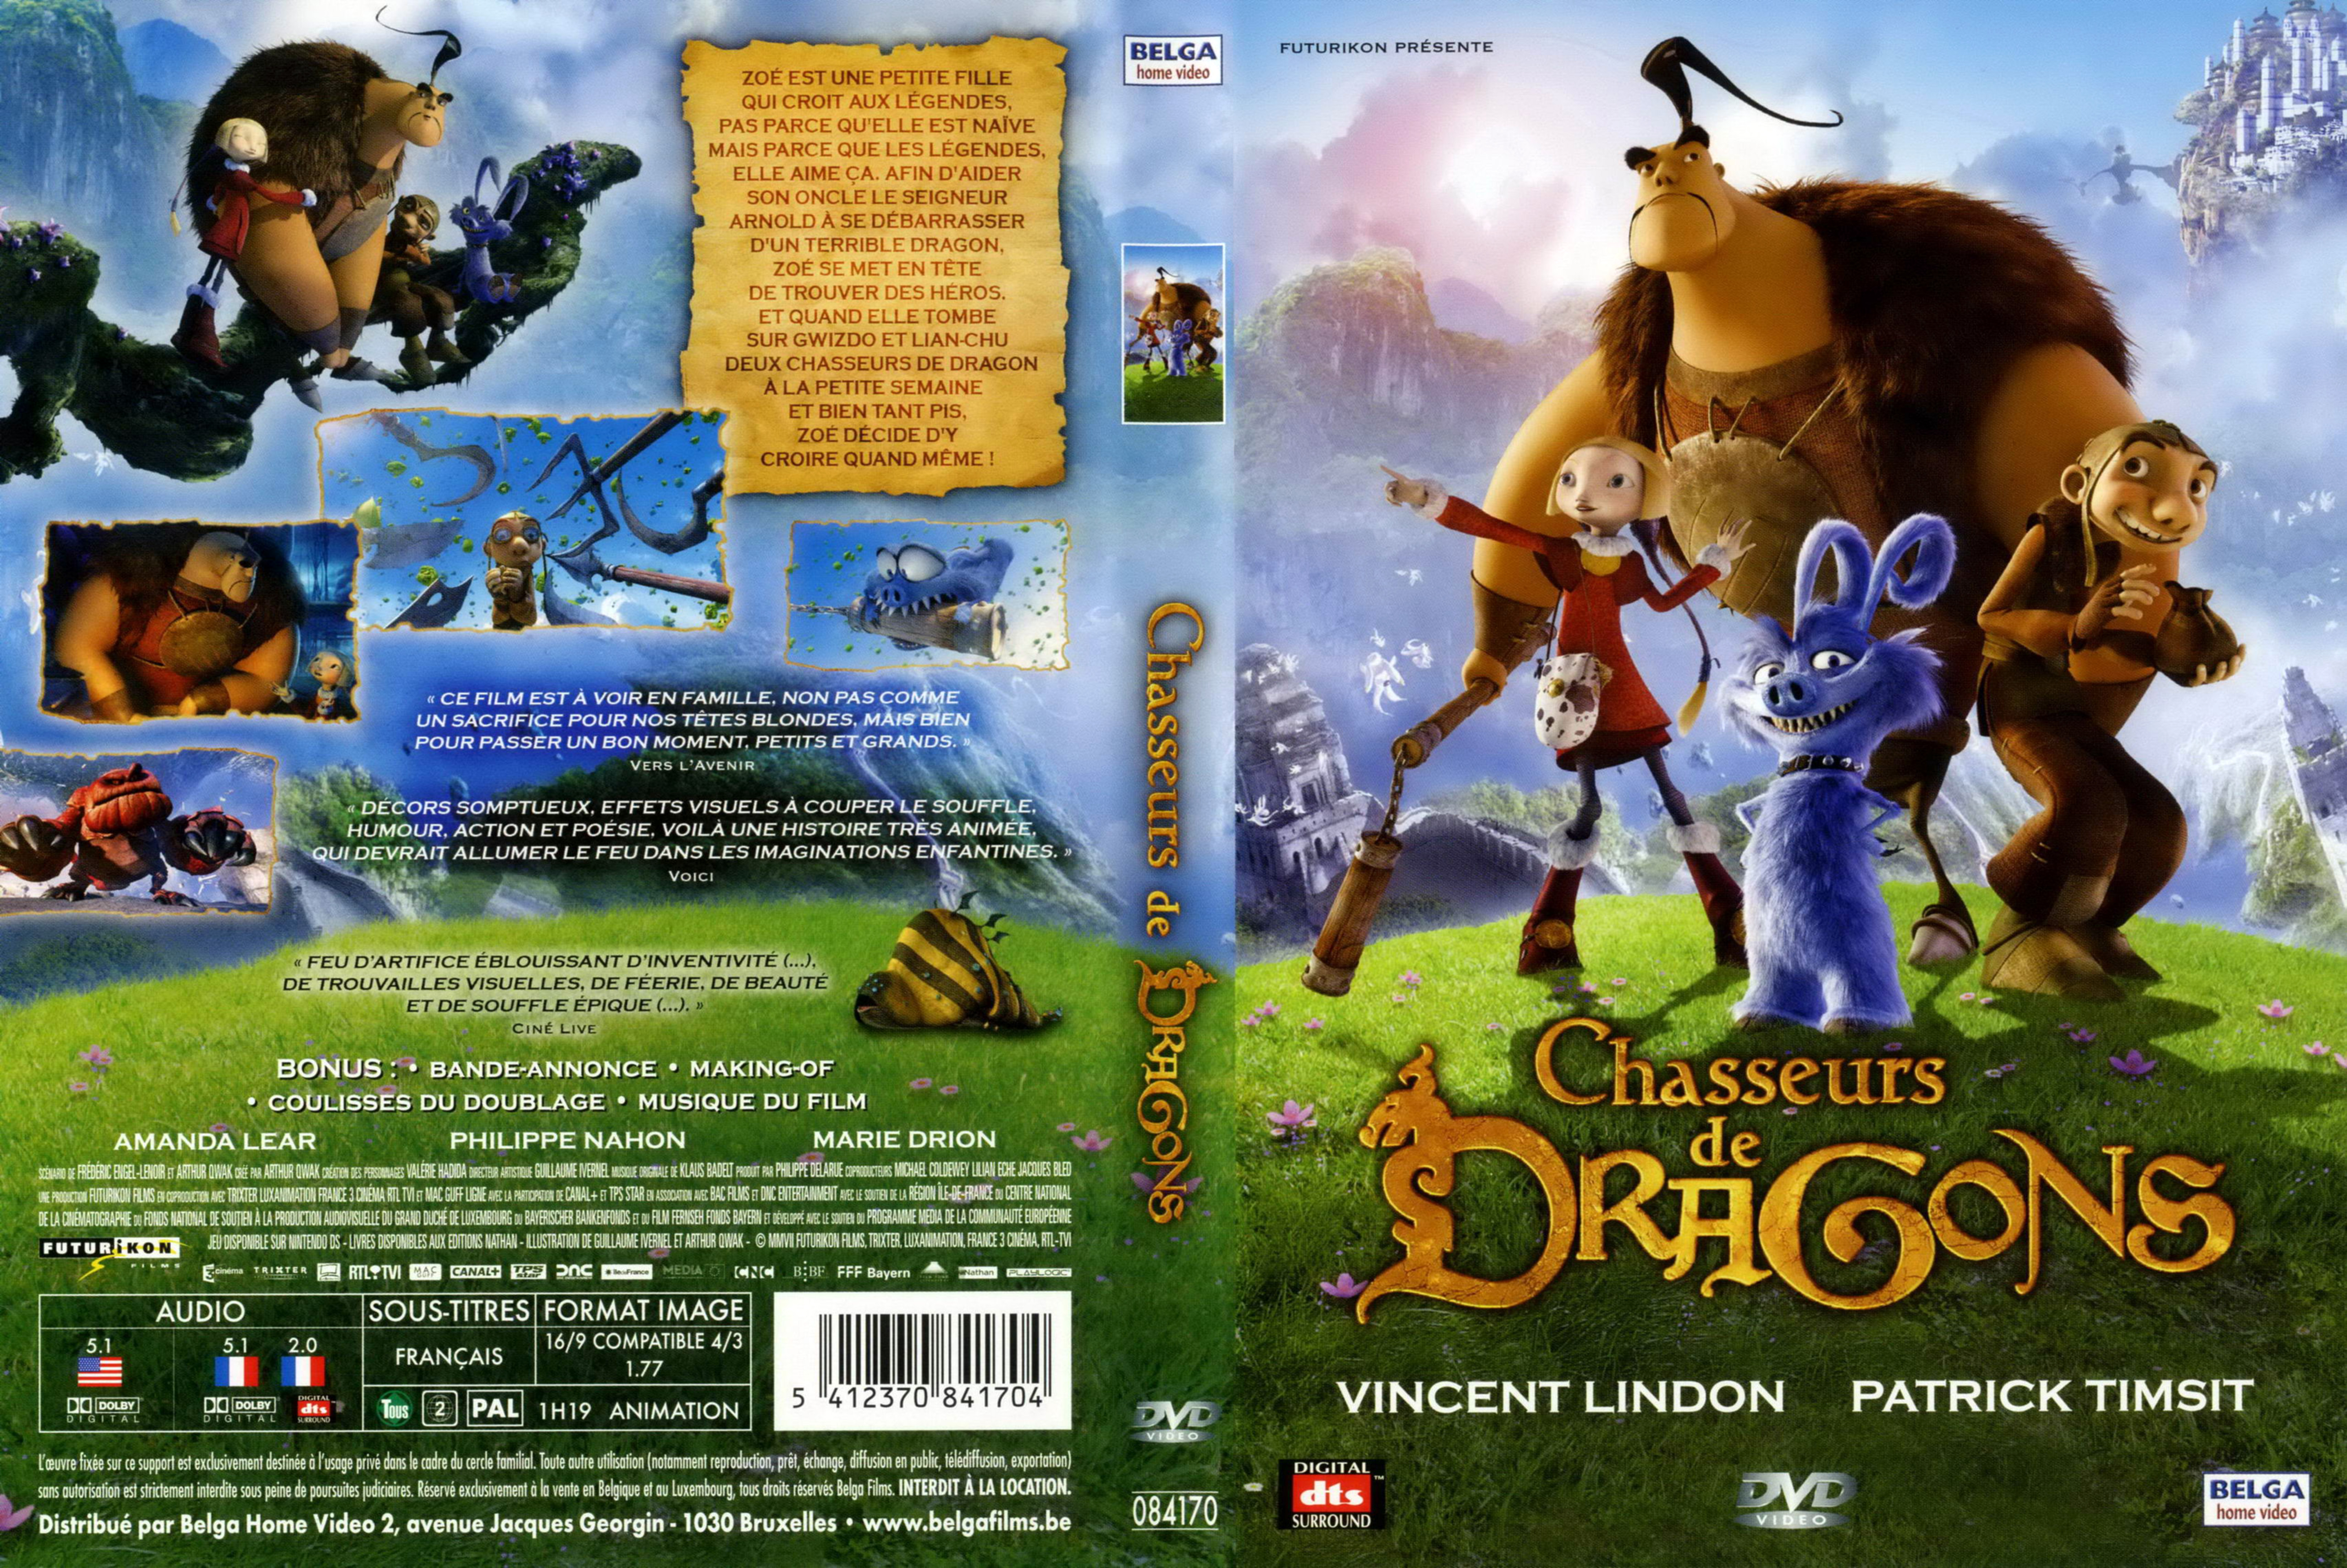 Jaquette DVD Chasseurs de dragons v2